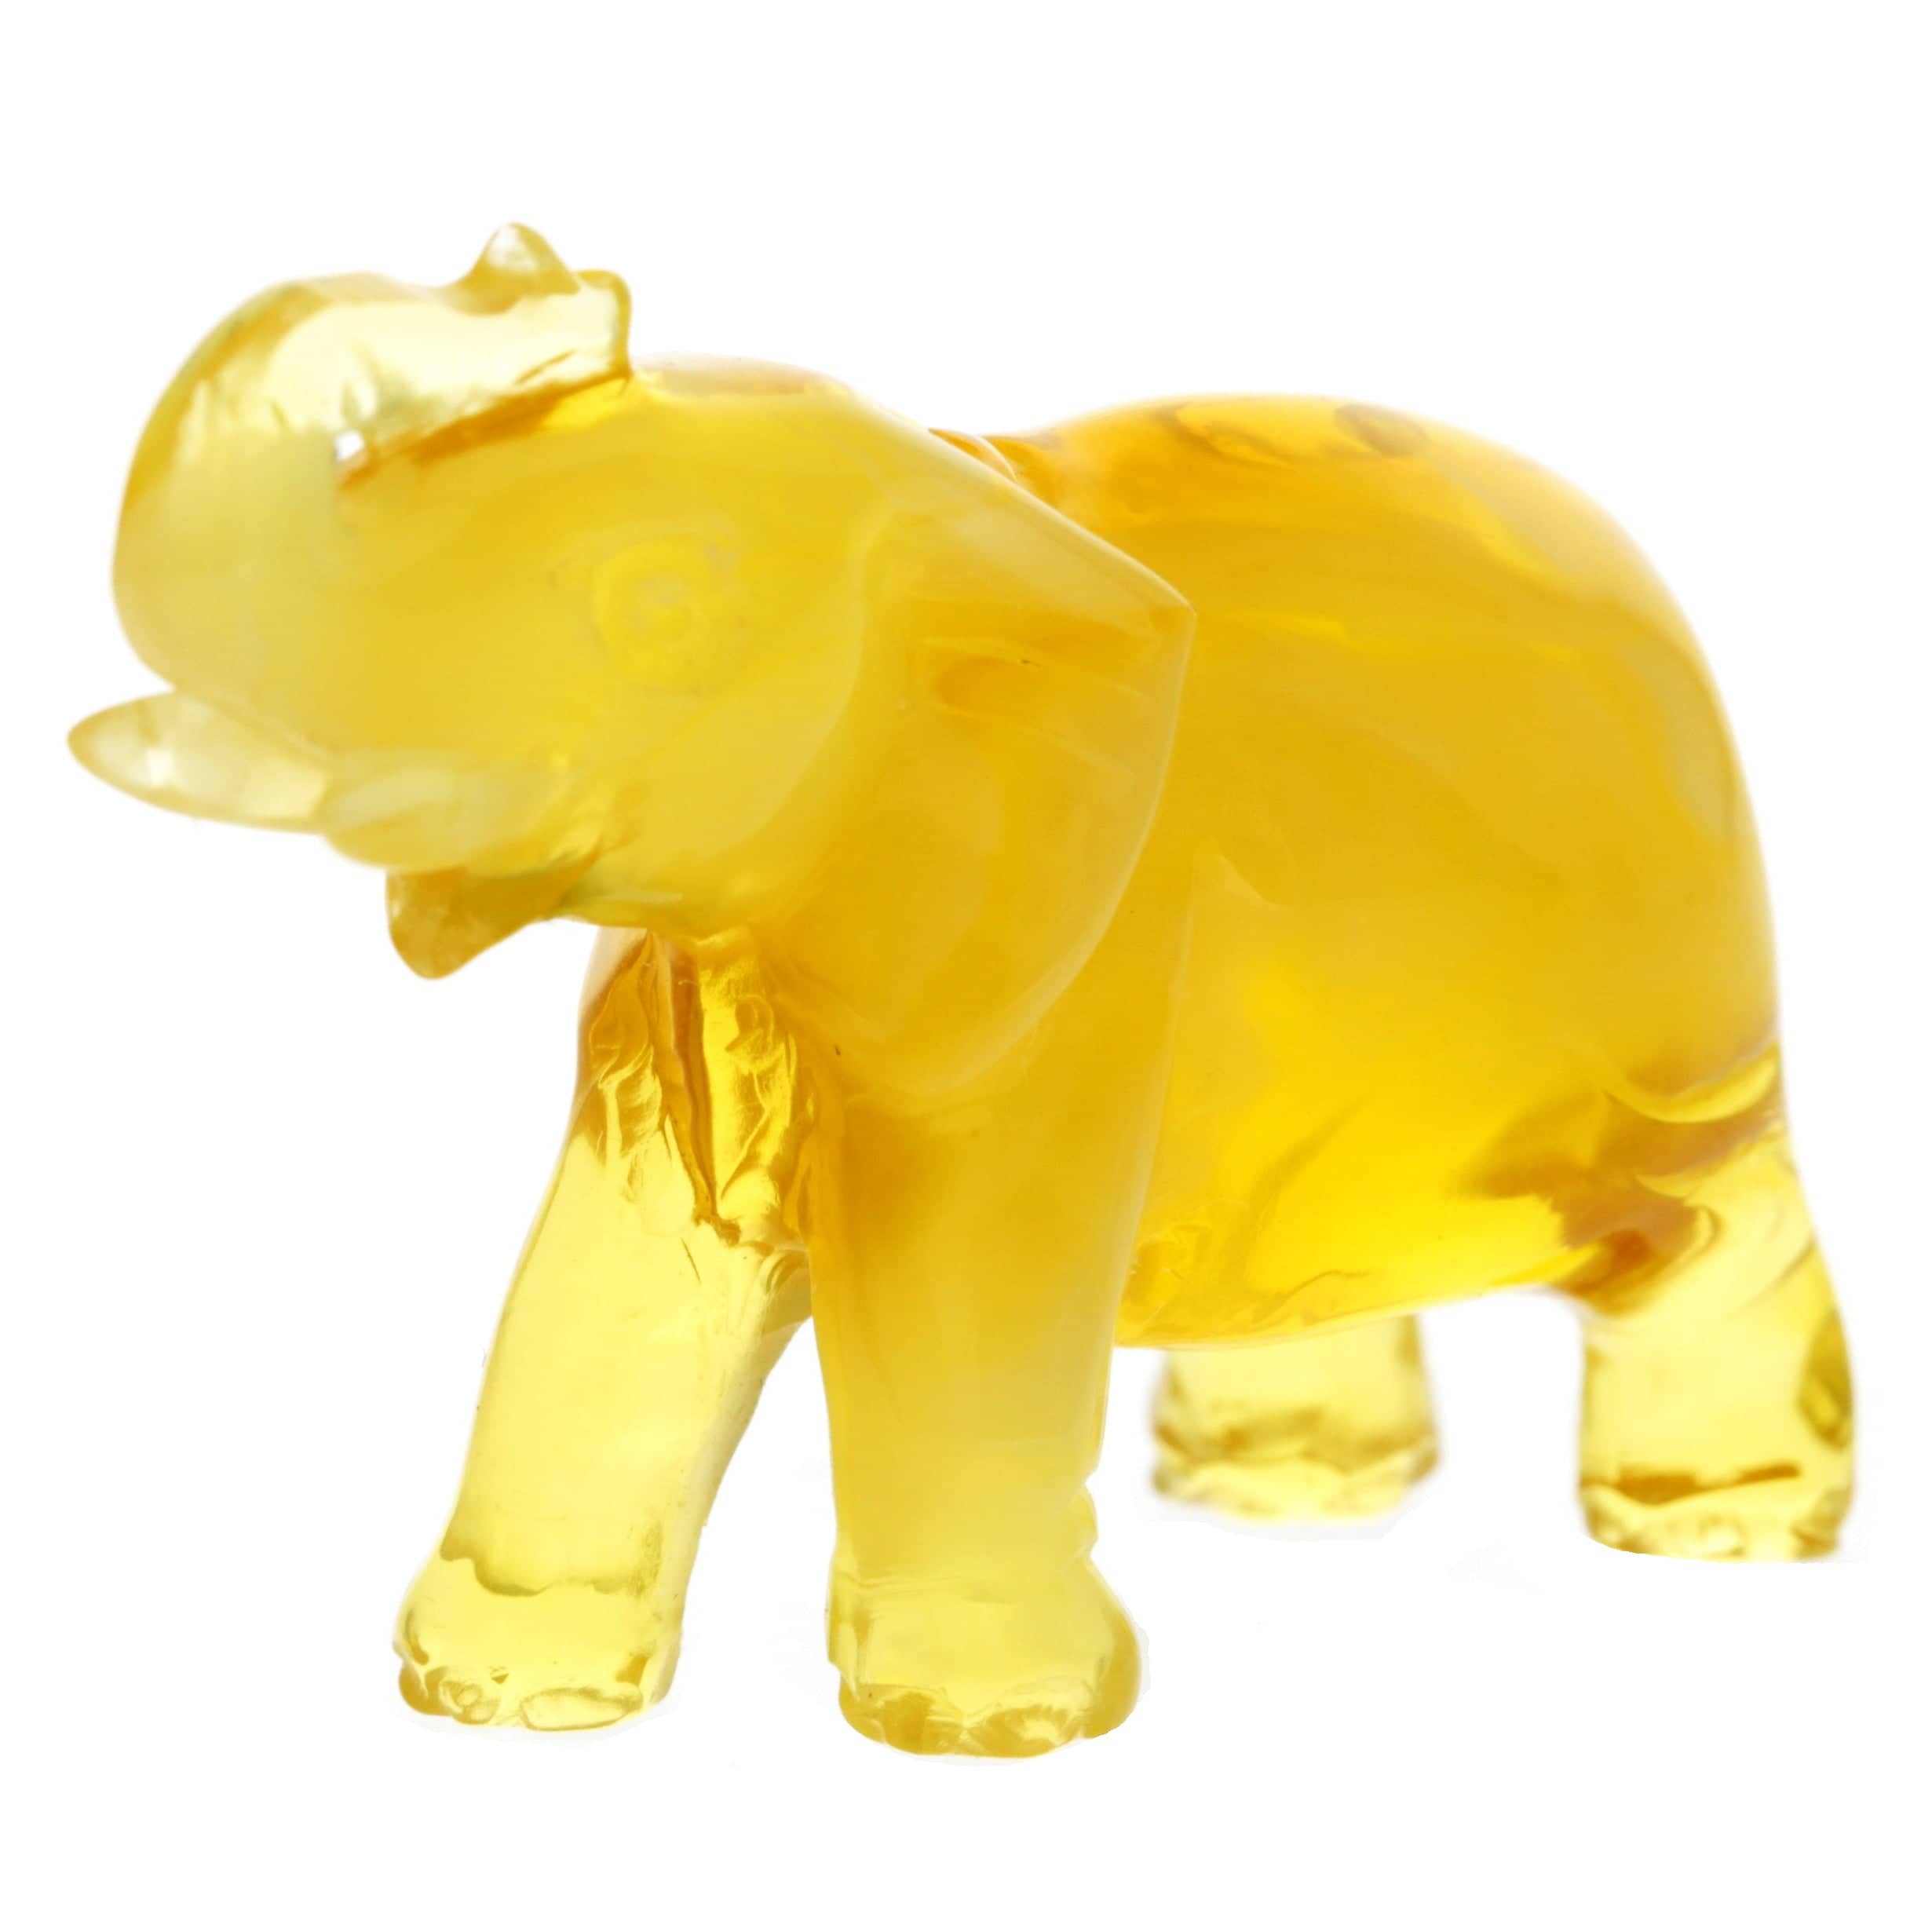 Figurine Superb Quality Handmade Natural Carved Elephant made of Genuine Baltic Amber - CRV97